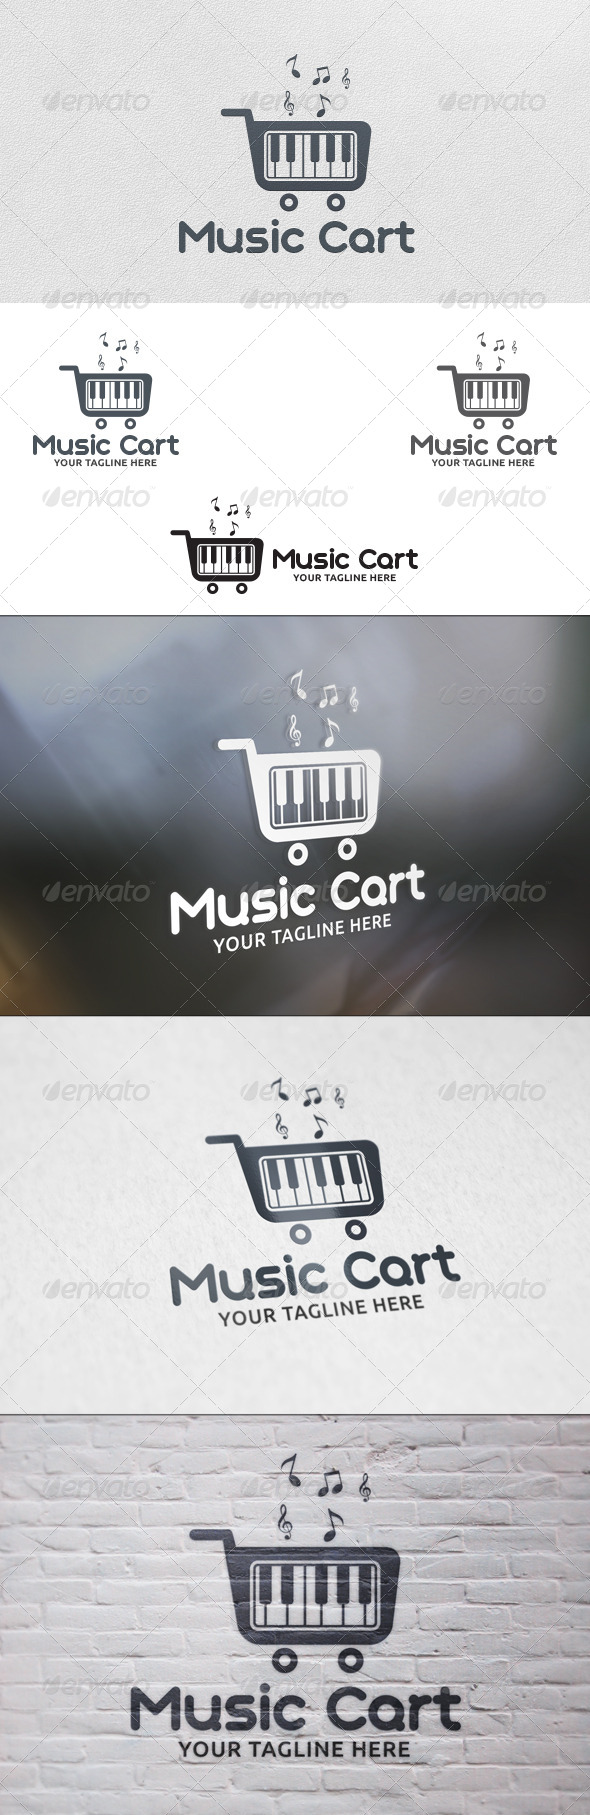 Music Cart - Logo Template